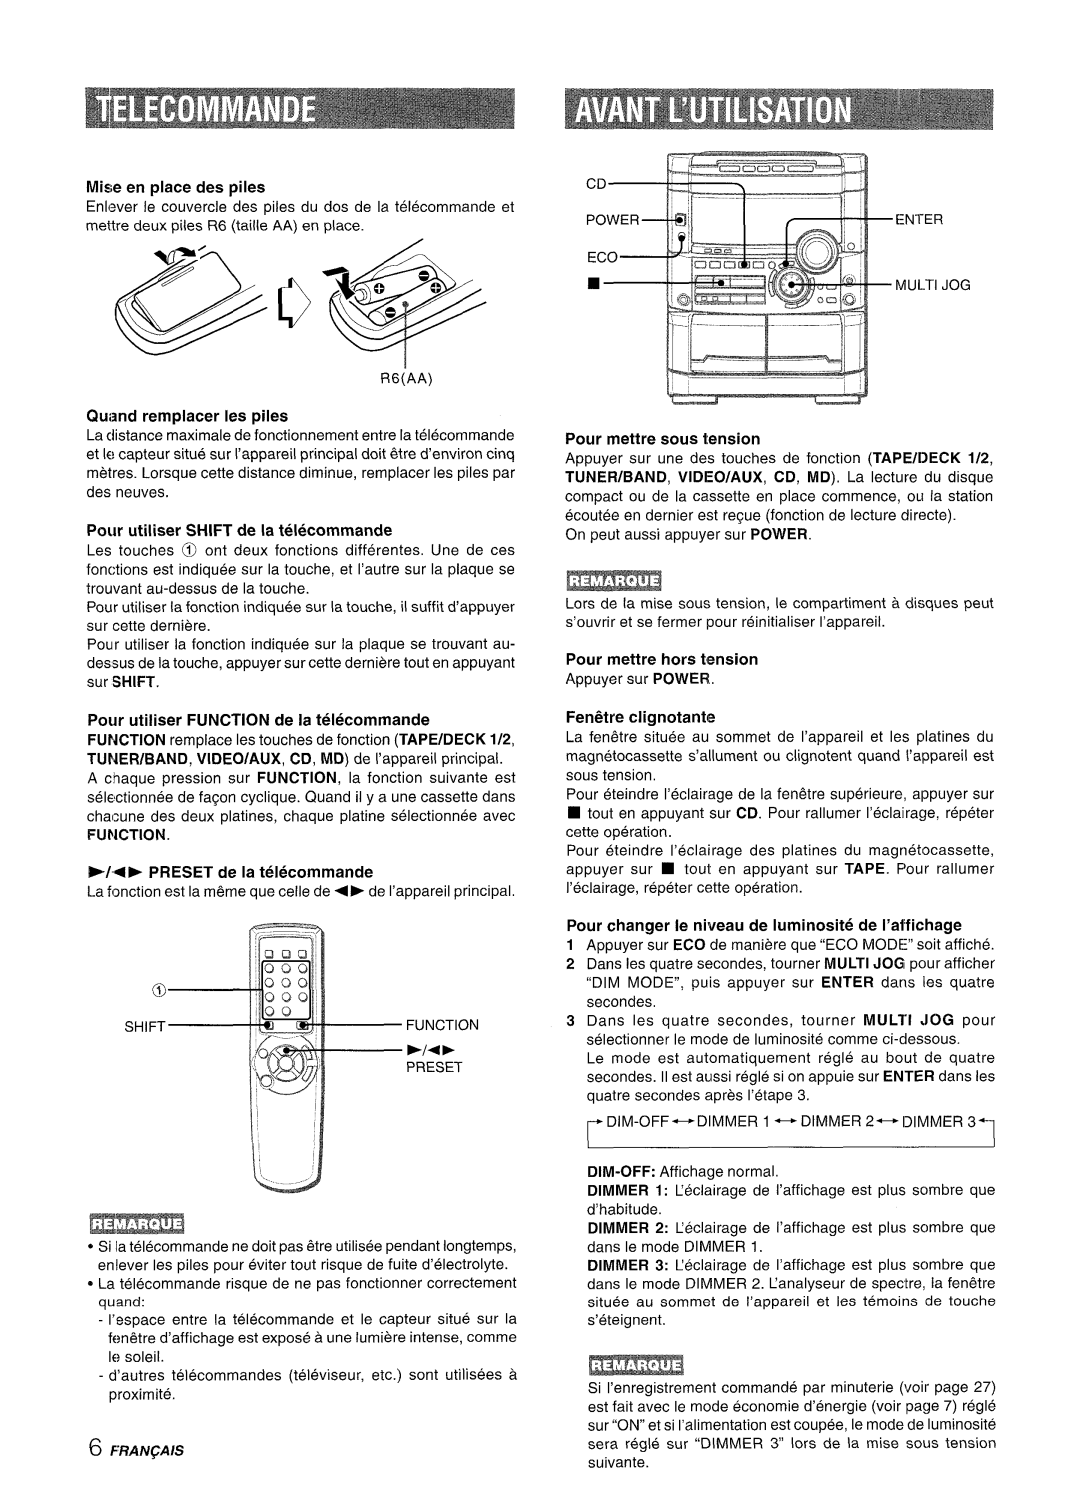 Sony NSX-A777 manual Mise en place des pileS, Quand remplacer Ies piles, Pour utiliser SHIFT de la telecommande 